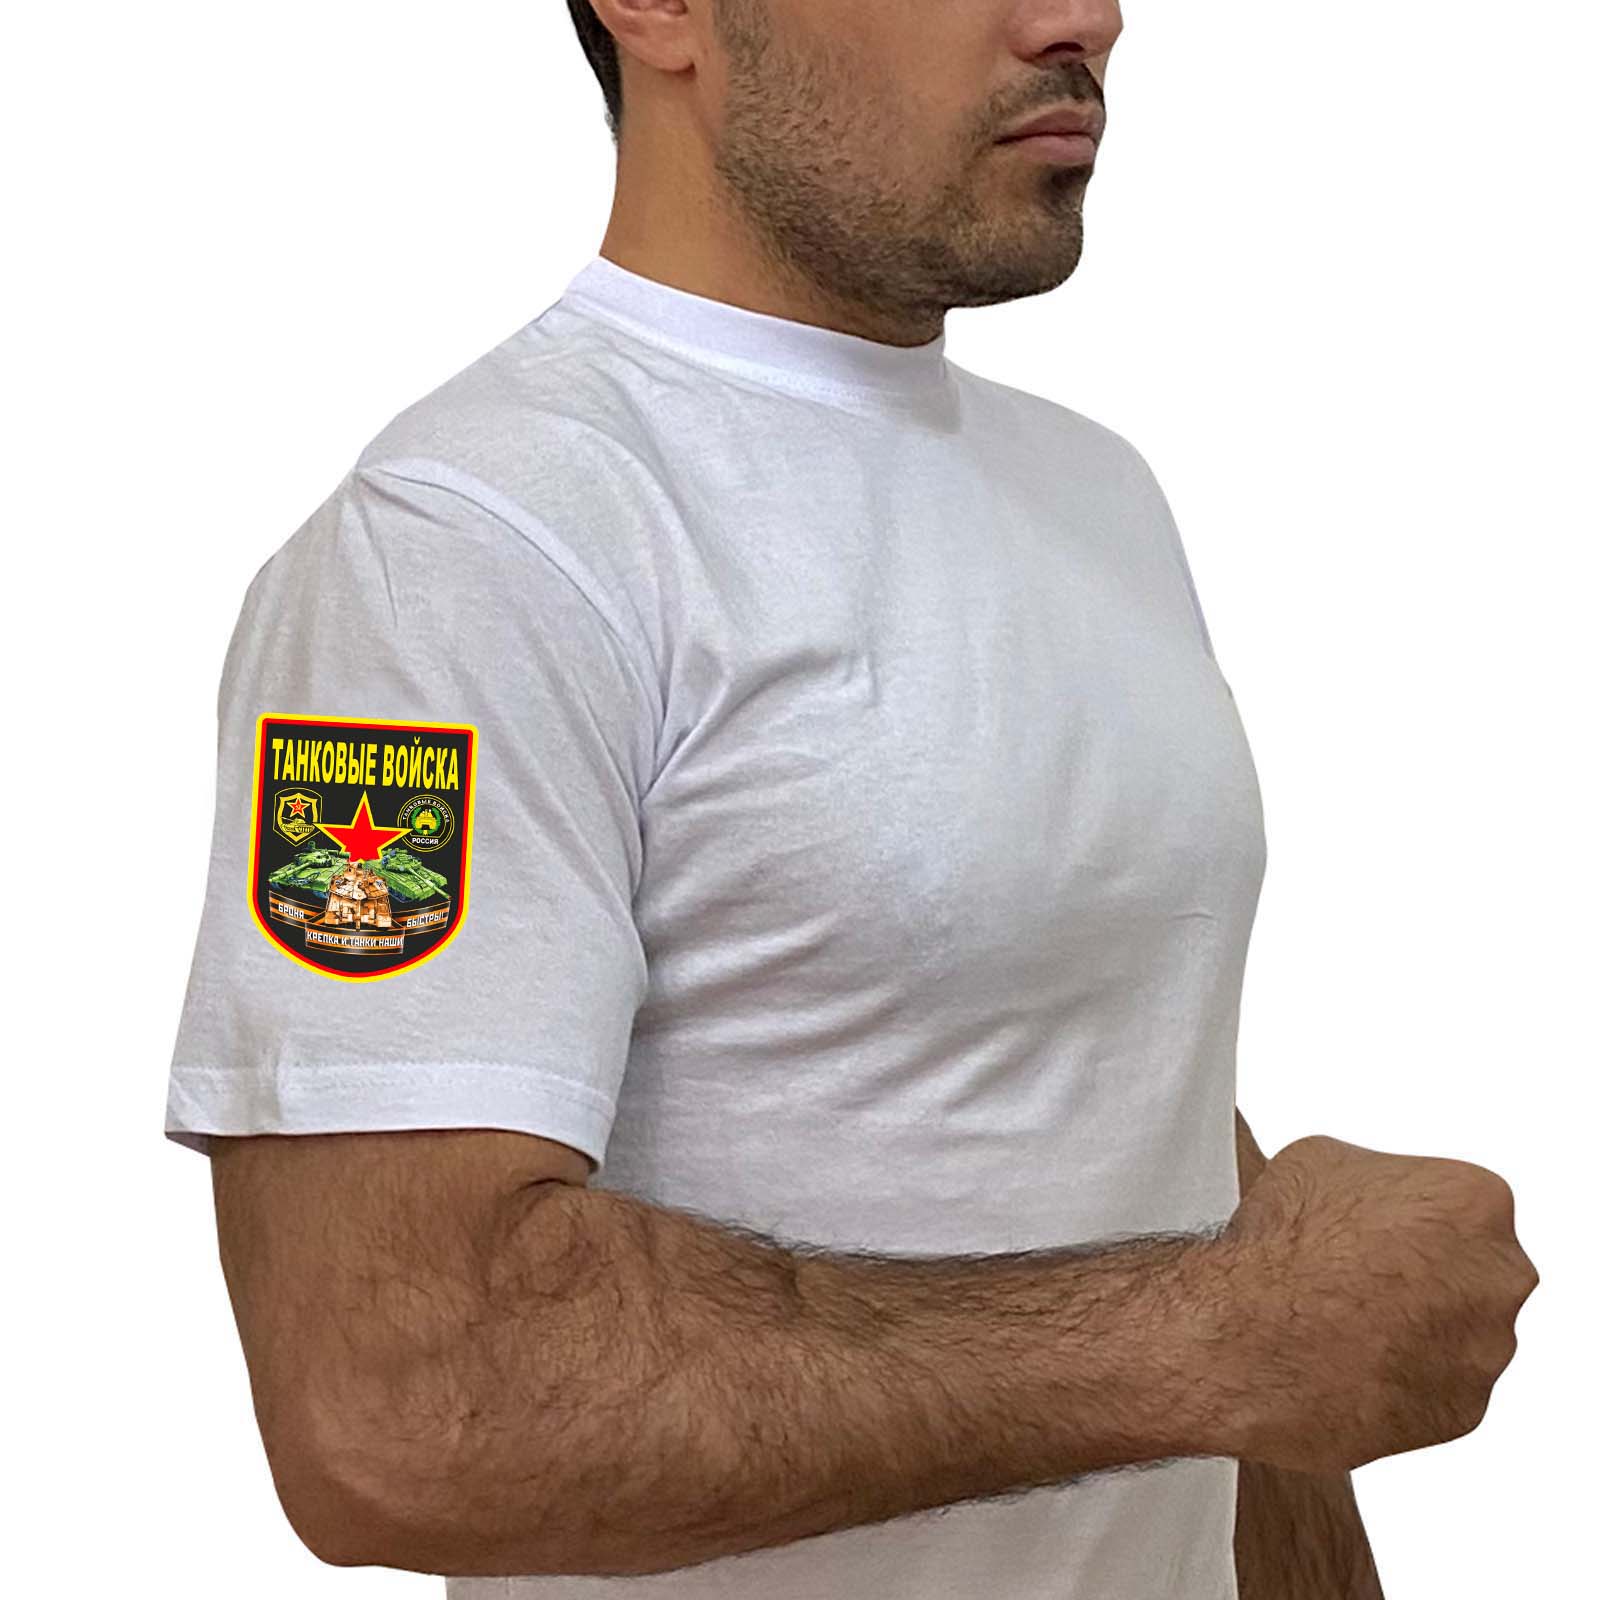 Купить белую топовую футболку с термотрансфером Танковые Войска онлайн